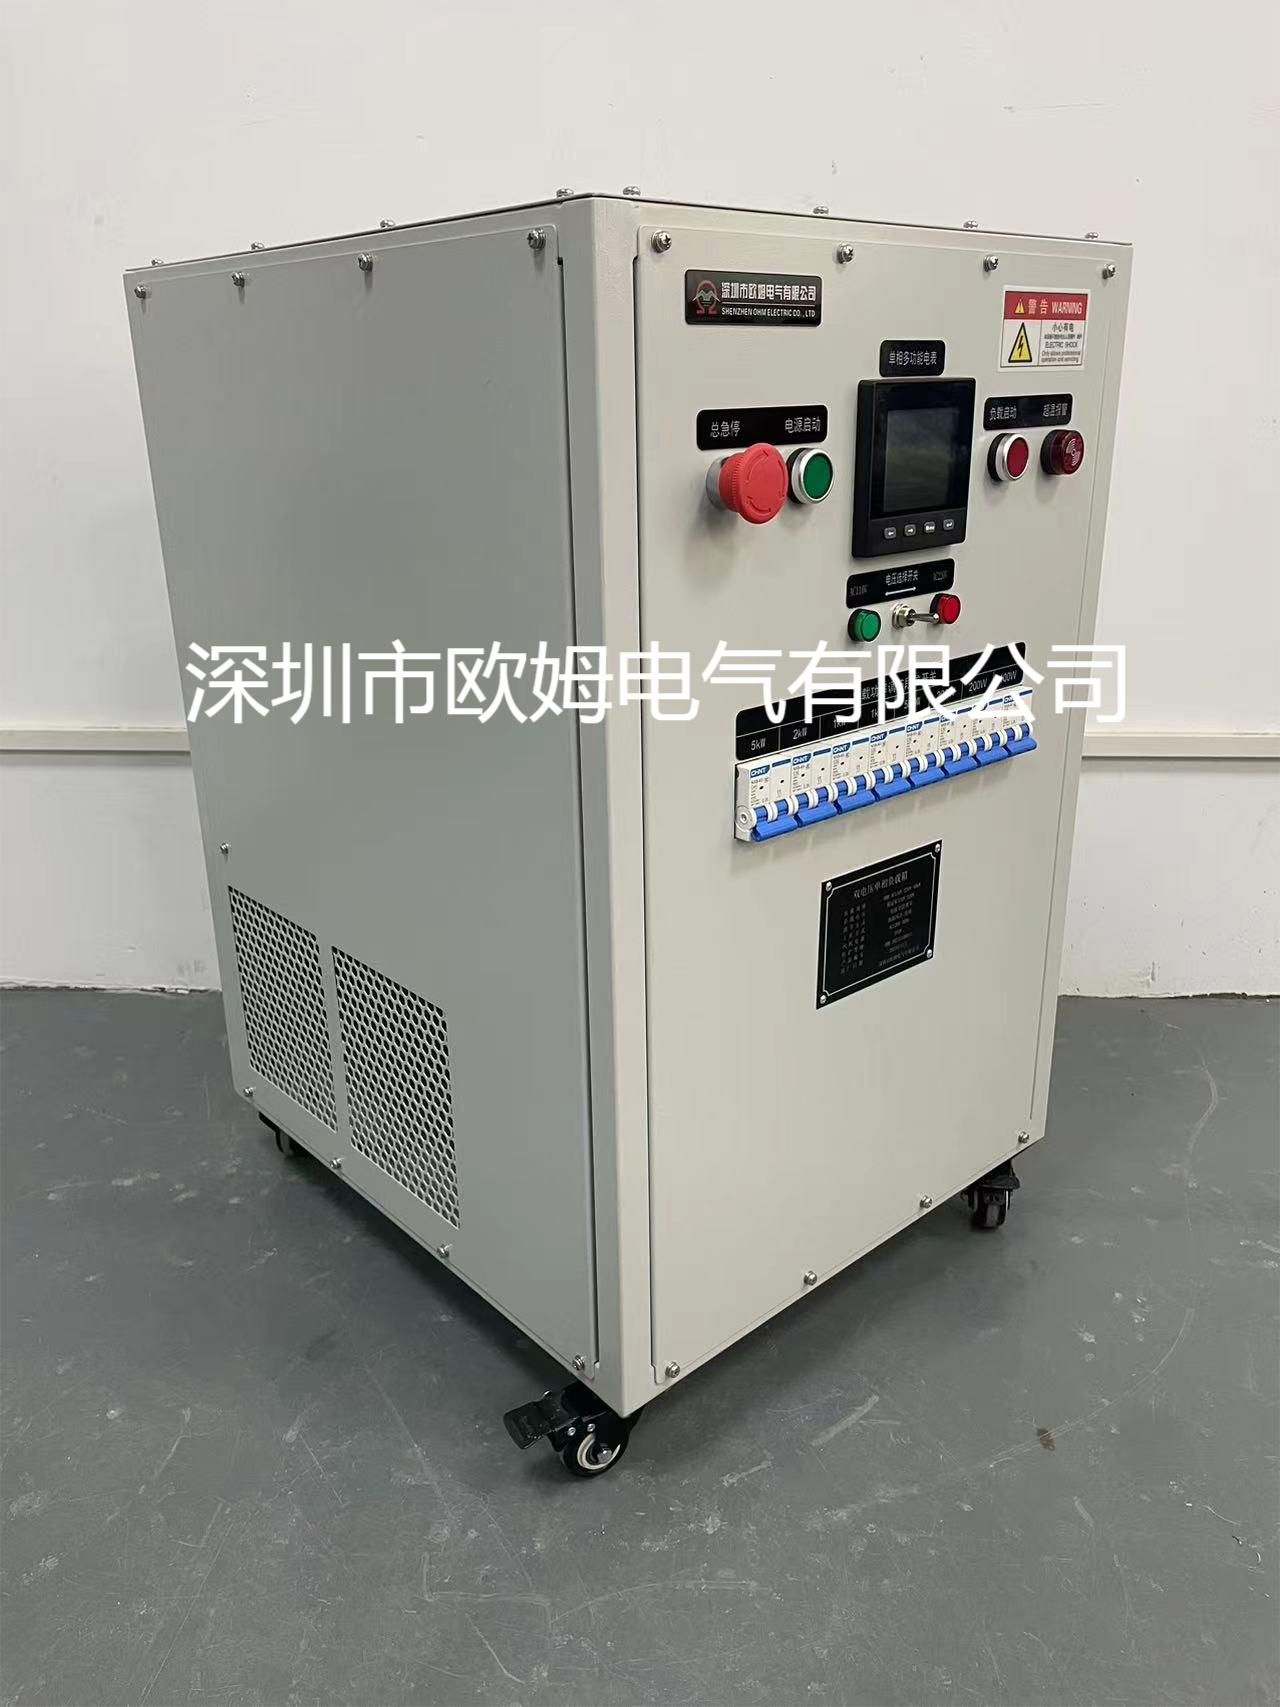 AC115-230V 10kW双电压负载